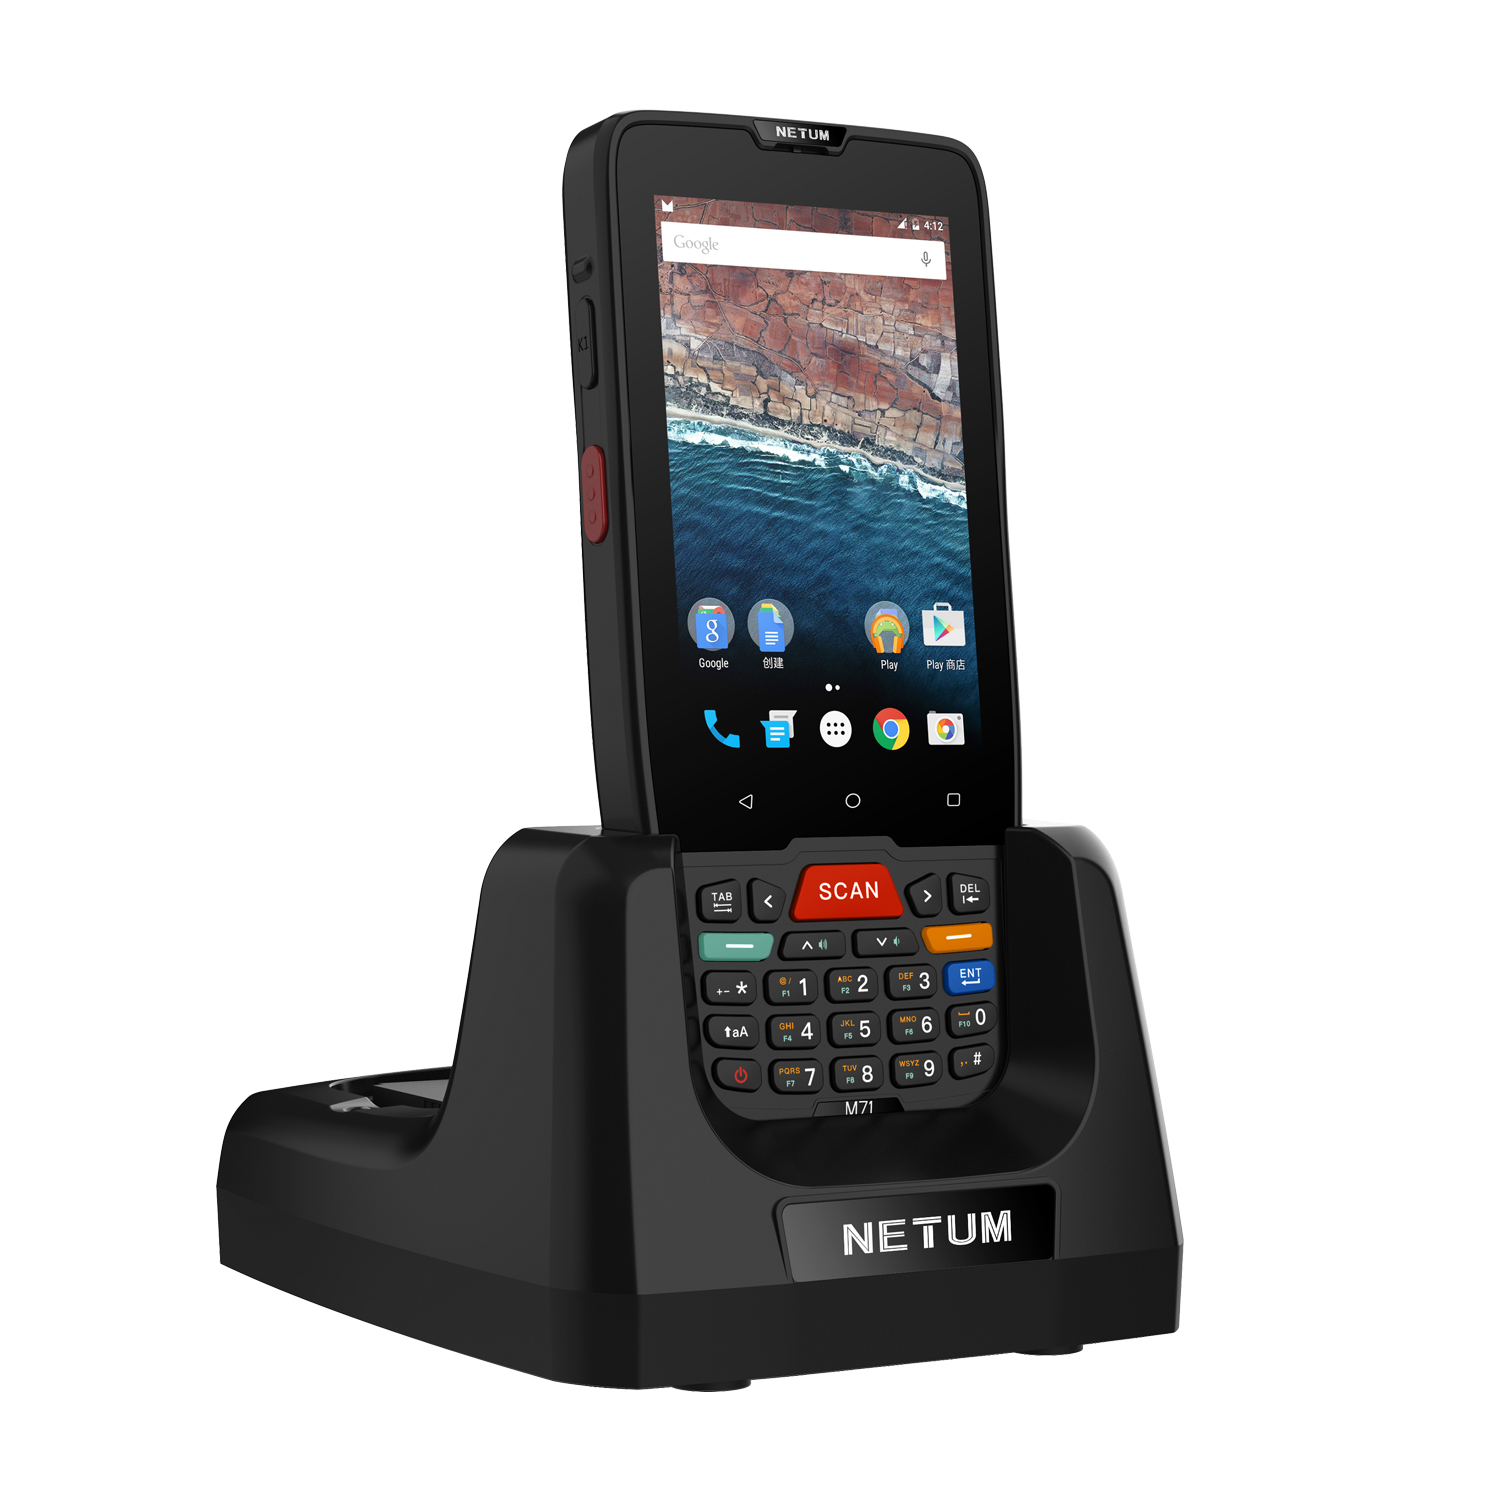 Купете NETUM PDA-D7100, NT-M71 PDA Android терминал 2D баркод скенер Сензорен екран Android терминално устройство с WIFI 4G GPS,NETUM PDA-D7100, NT-M71 PDA Android терминал 2D баркод скенер Сензорен екран Android терминално устройство с WIFI 4G GPS Цена,NETUM PDA-D7100, NT-M71 PDA Android терминал 2D баркод скенер Сензорен екран Android терминално устройство с WIFI 4G GPS марка,NETUM PDA-D7100, NT-M71 PDA Android терминал 2D баркод скенер Сензорен екран Android терминално устройство с WIFI 4G GPS Производител,NETUM PDA-D7100, NT-M71 PDA Android терминал 2D баркод скенер Сензорен екран Android терминално устройство с WIFI 4G GPS Цитати. NETUM PDA-D7100, NT-M71 PDA Android терминал 2D баркод скенер Сензорен екран Android терминално устройство с WIFI 4G GPS Компания,